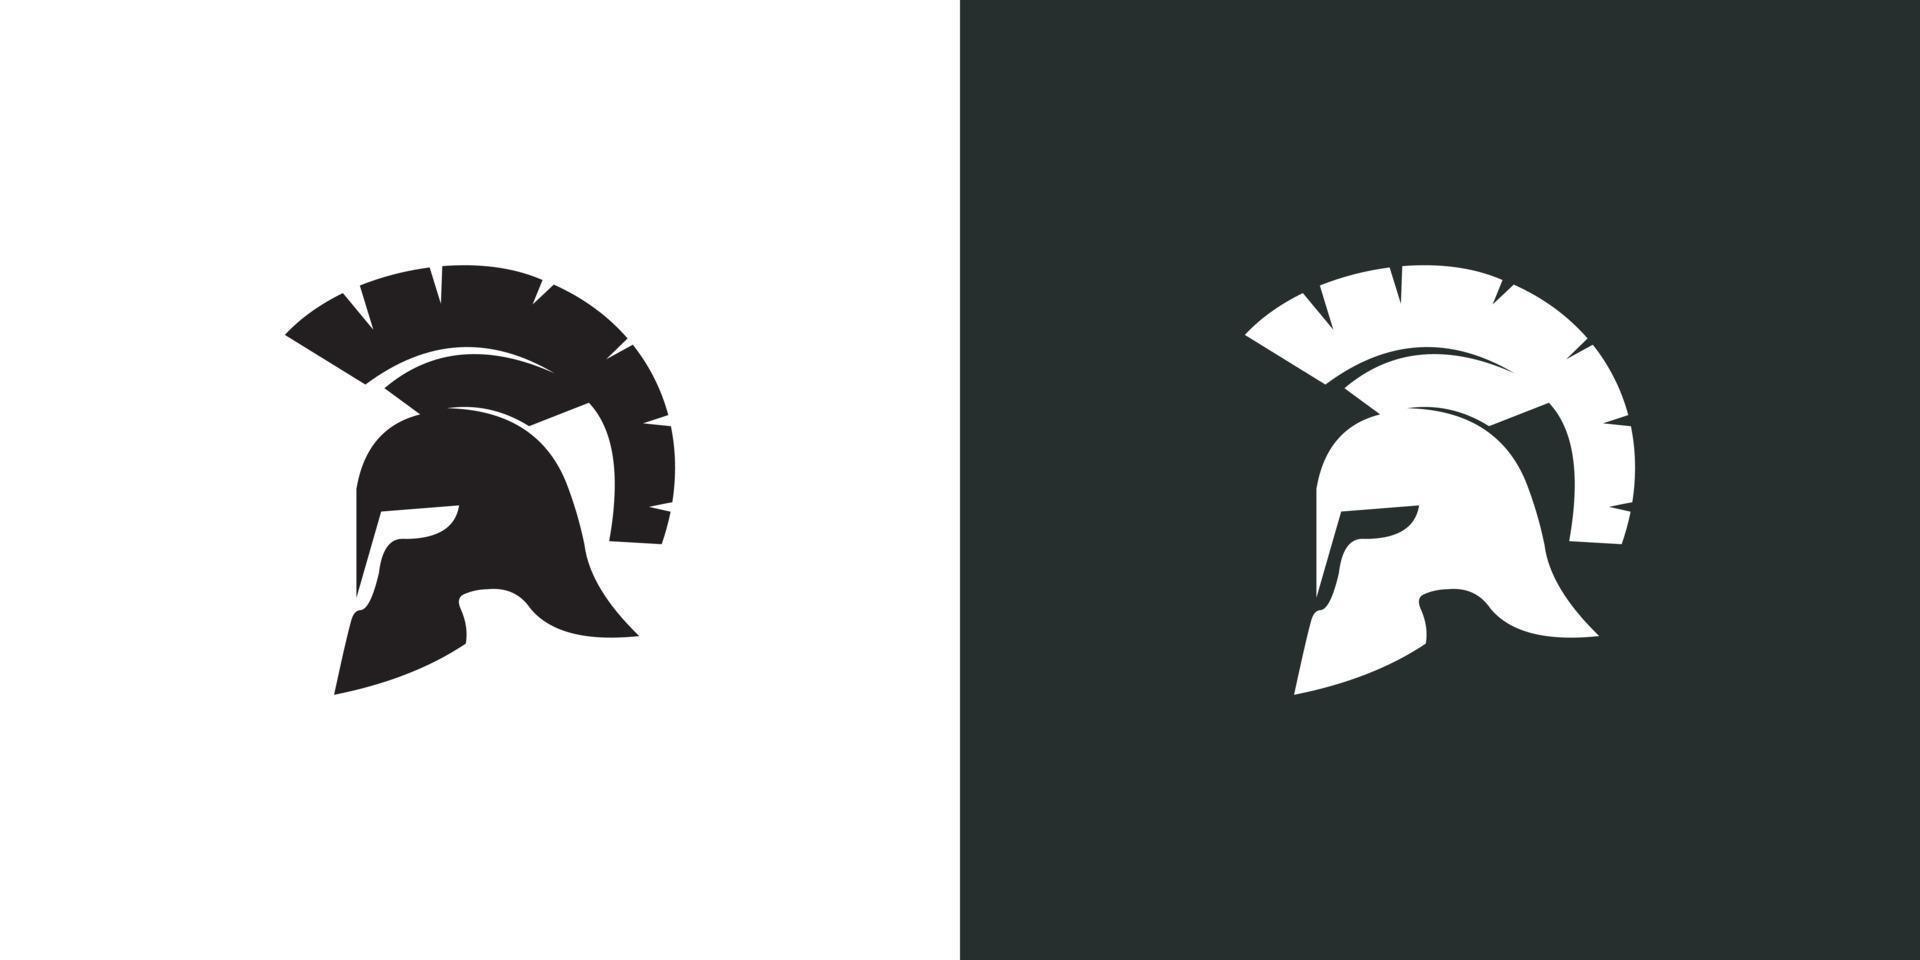 Spartan helmet logo vector designs